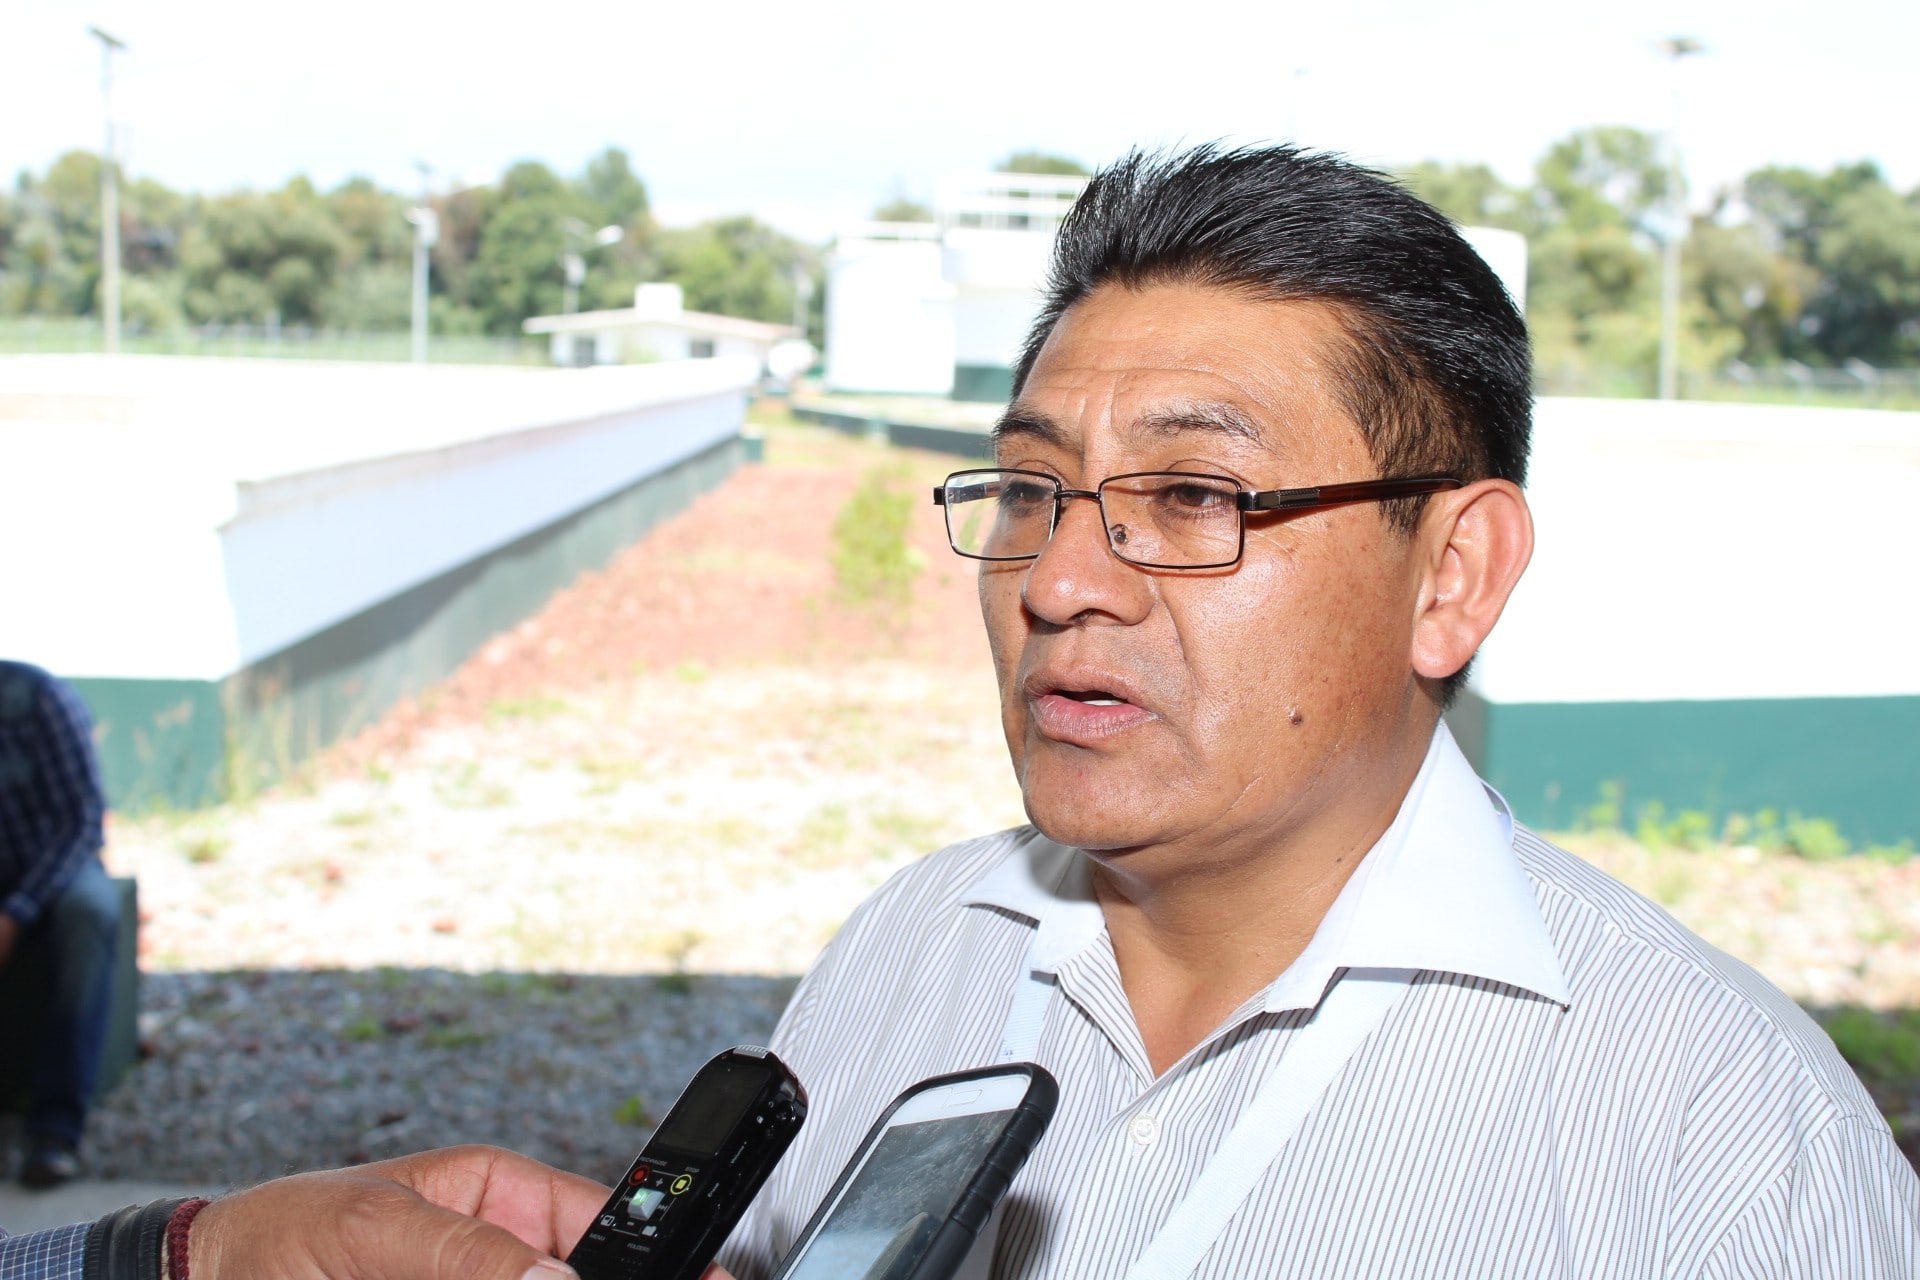 Alcalde de Huactzinco vende plazas, tolera golpeadores y emplea a su familia